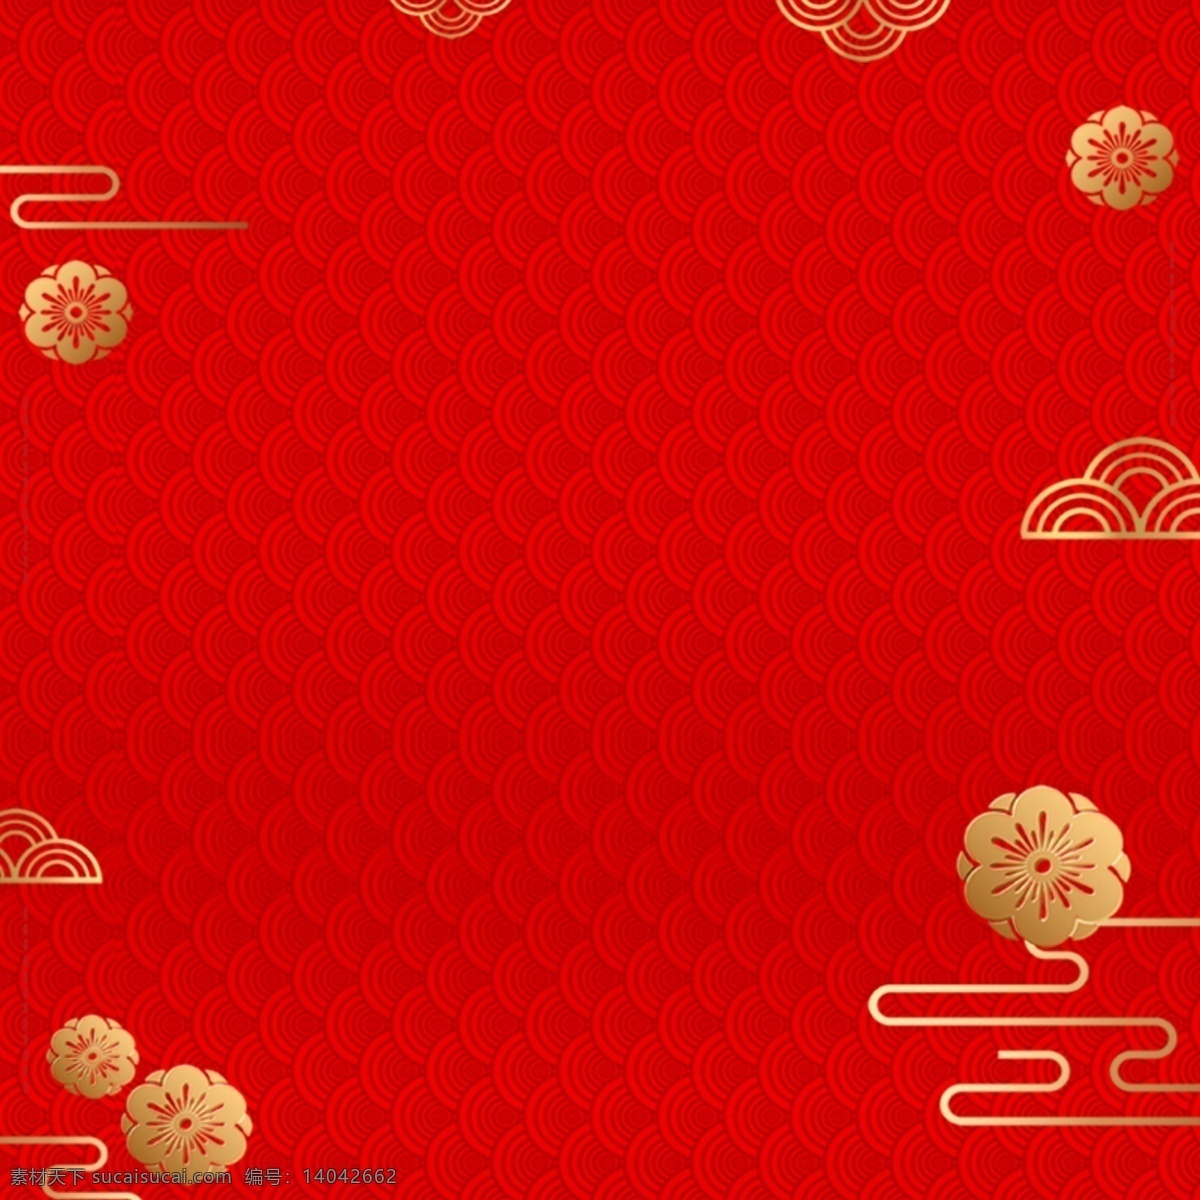 中国 红 元素 模版 红色背景 红色底纹 金色元素 国风底纹 促销背景 商业 淘宝界面设计 淘宝 广告 banner